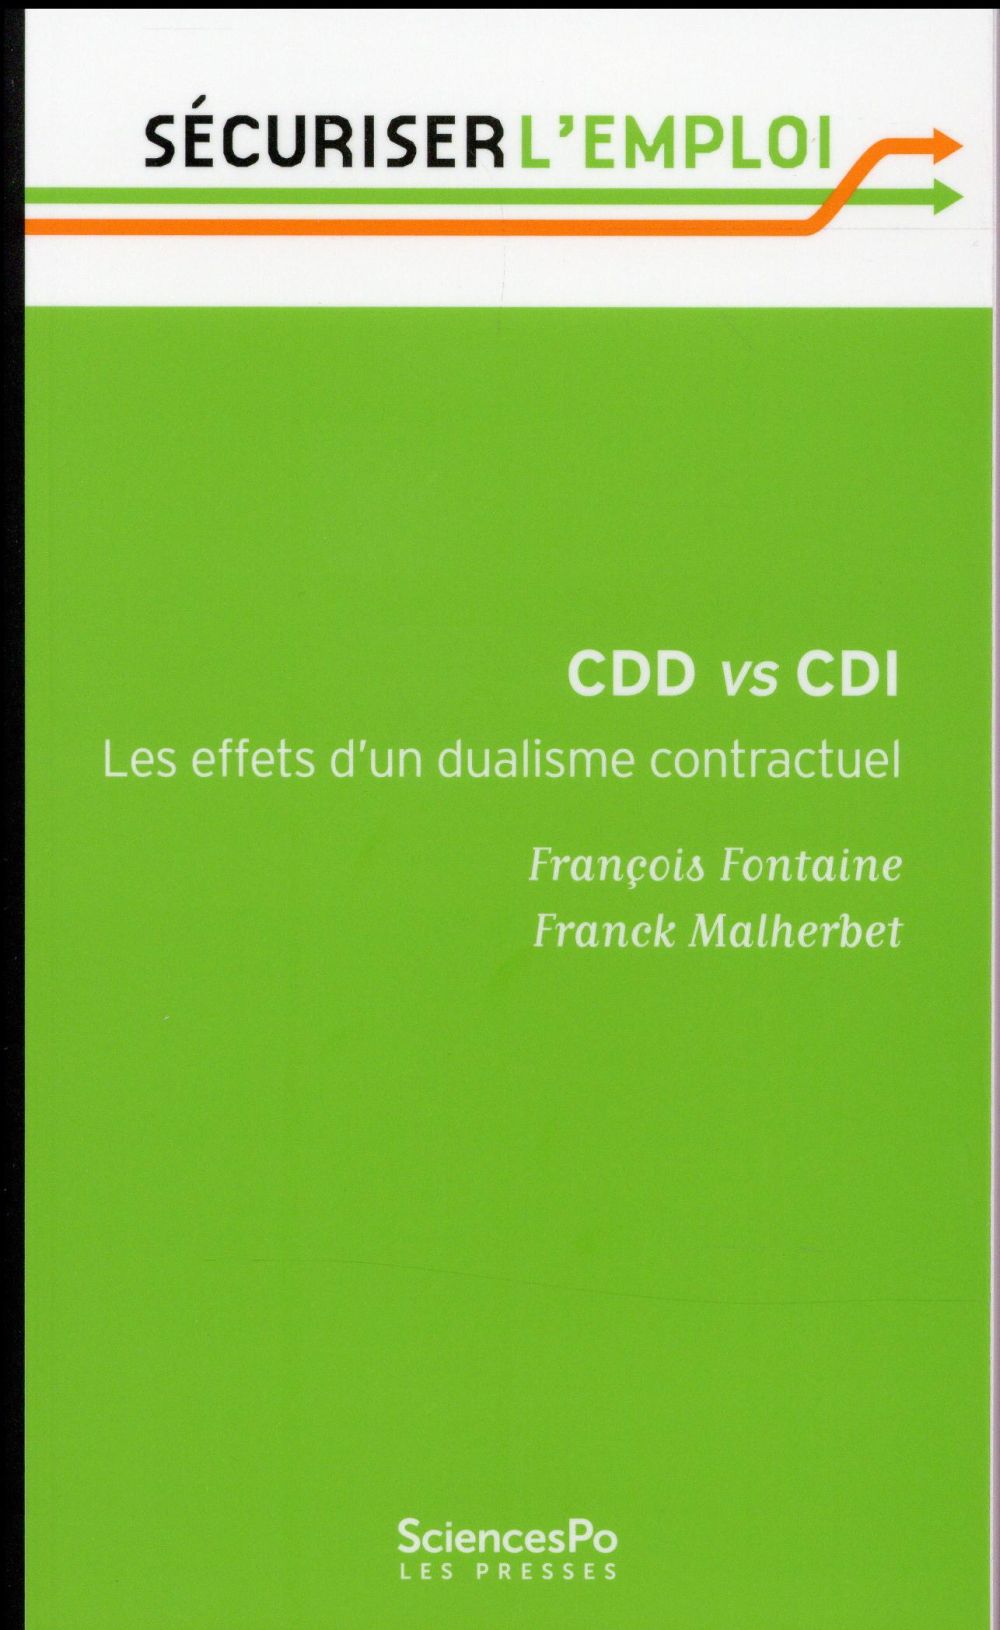 CDD VS CDI - LES EFFETS D'UN DUALISME CONTRACTUEL